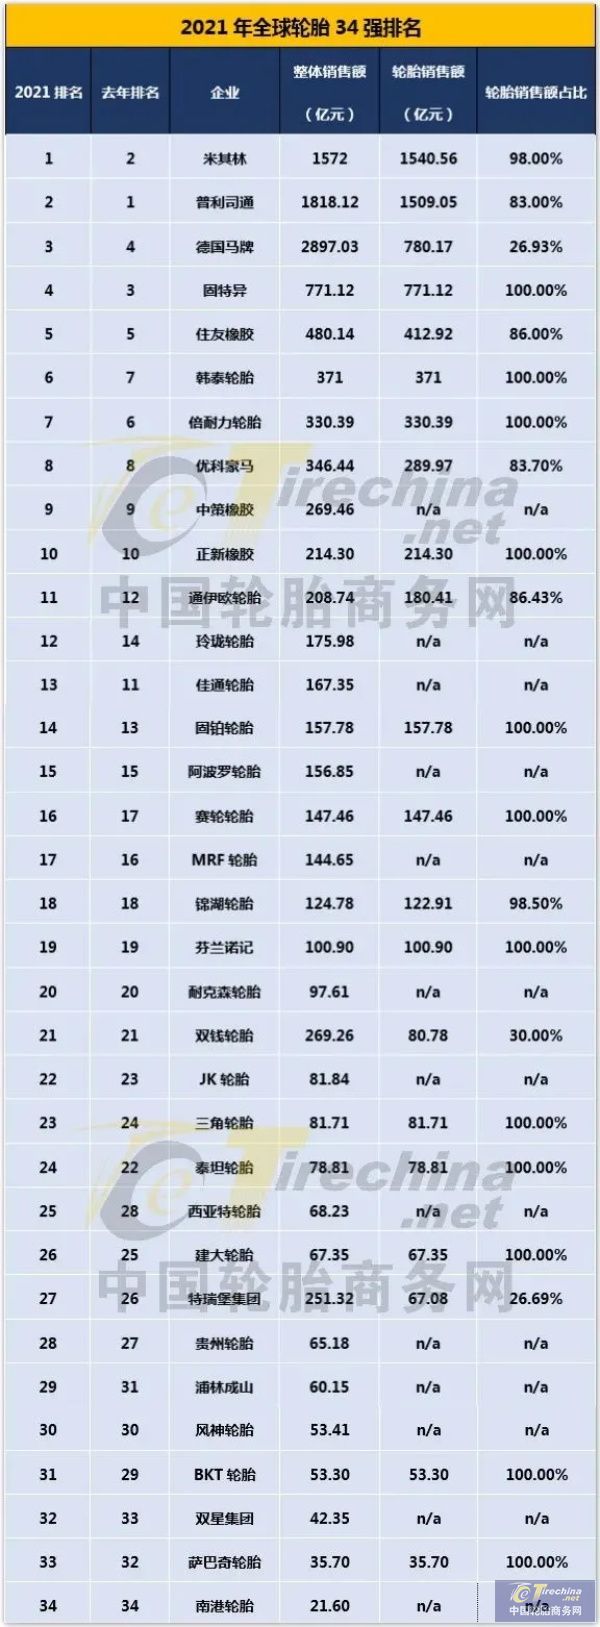 最新全球轮胎排行张榜,中国轮胎排名上升速度最快!